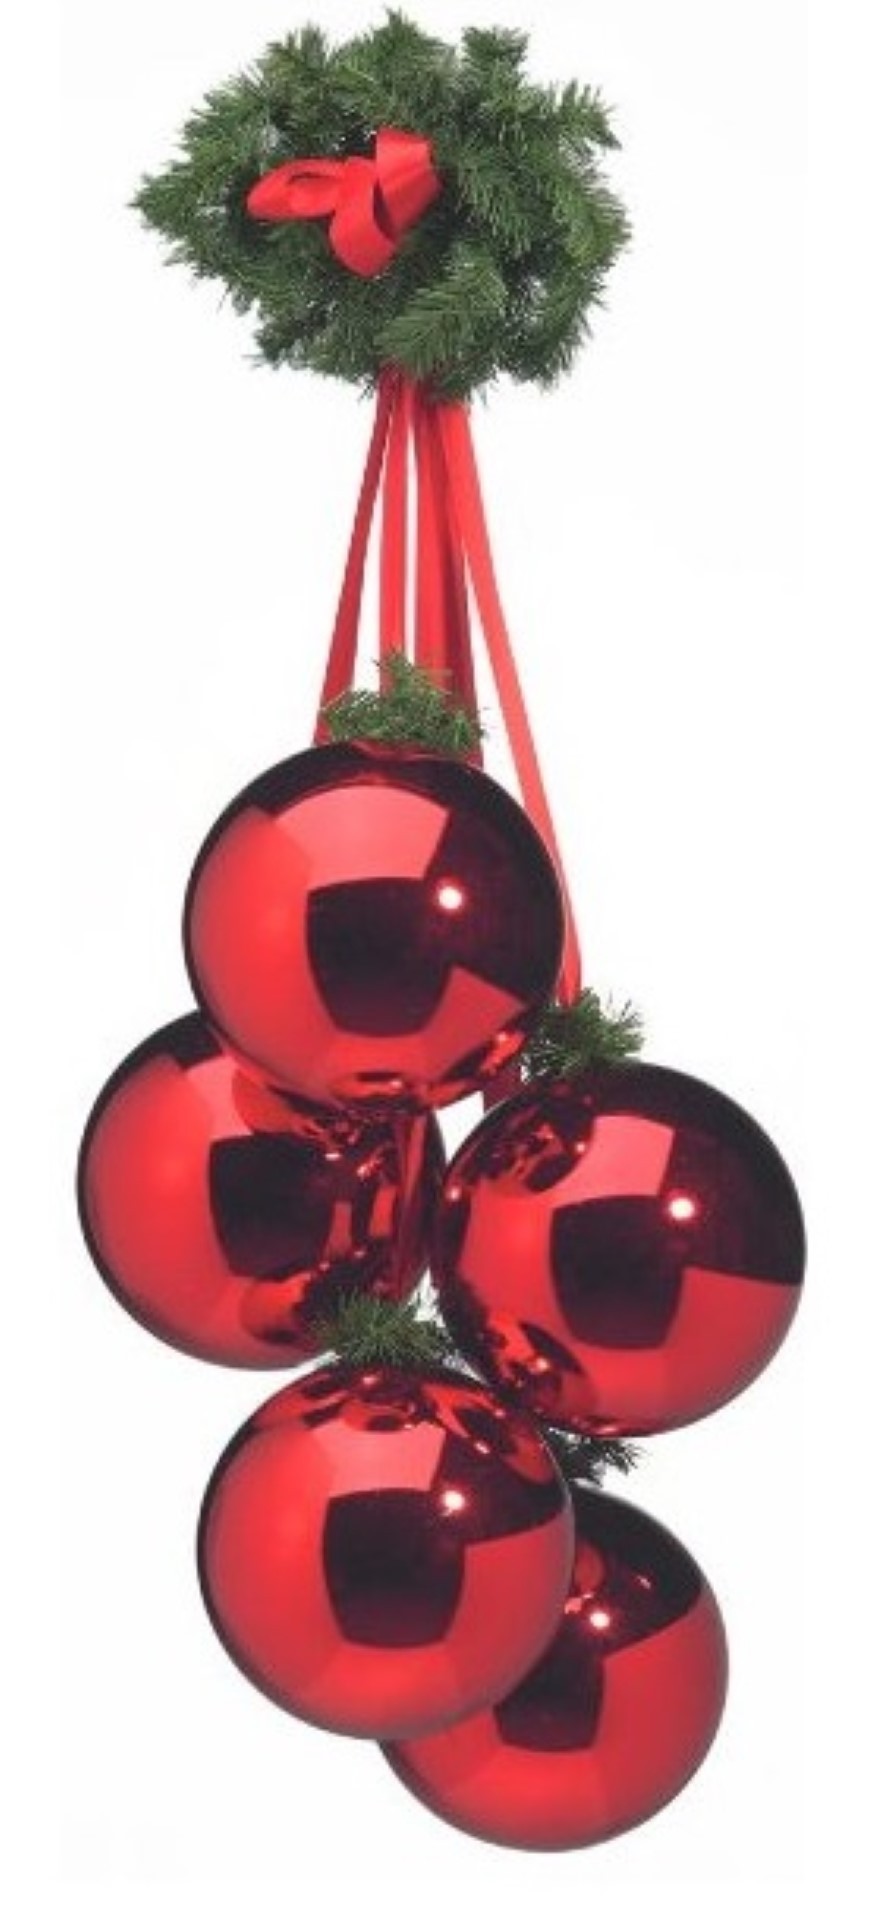 Hangende rode kerstballen 5 stuks 10 cm met groen